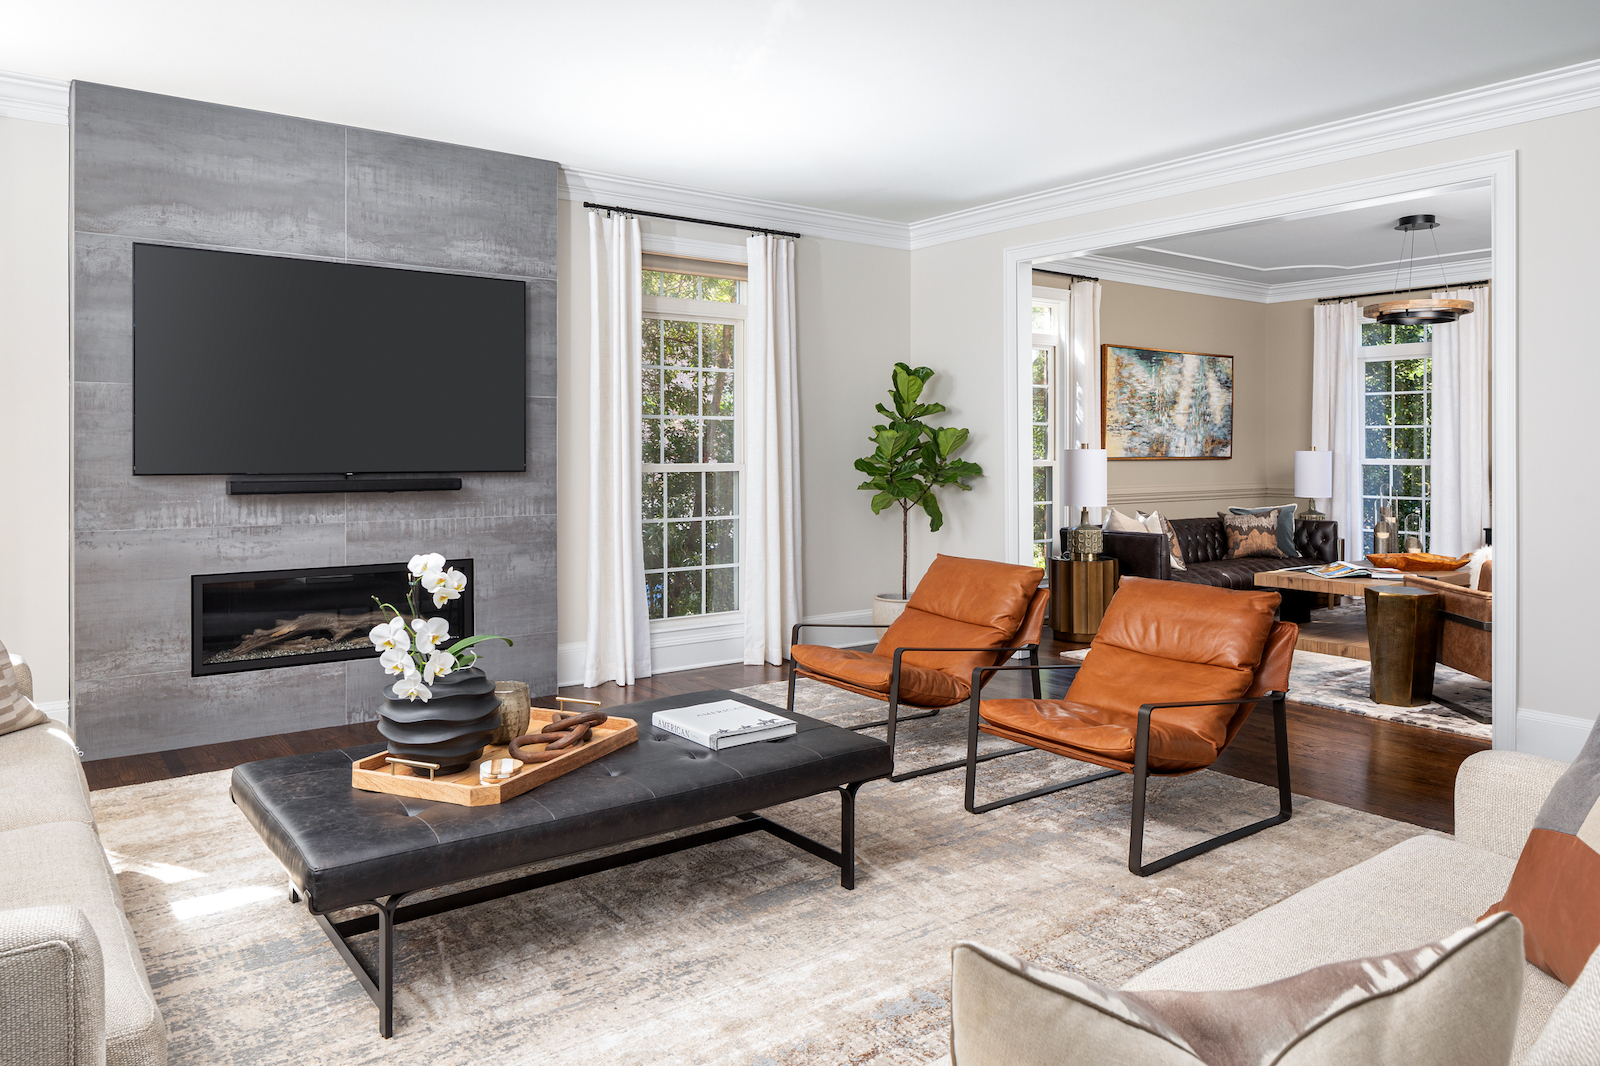 Interior designer Gracious Home Interiors designed this Area rug in living room design